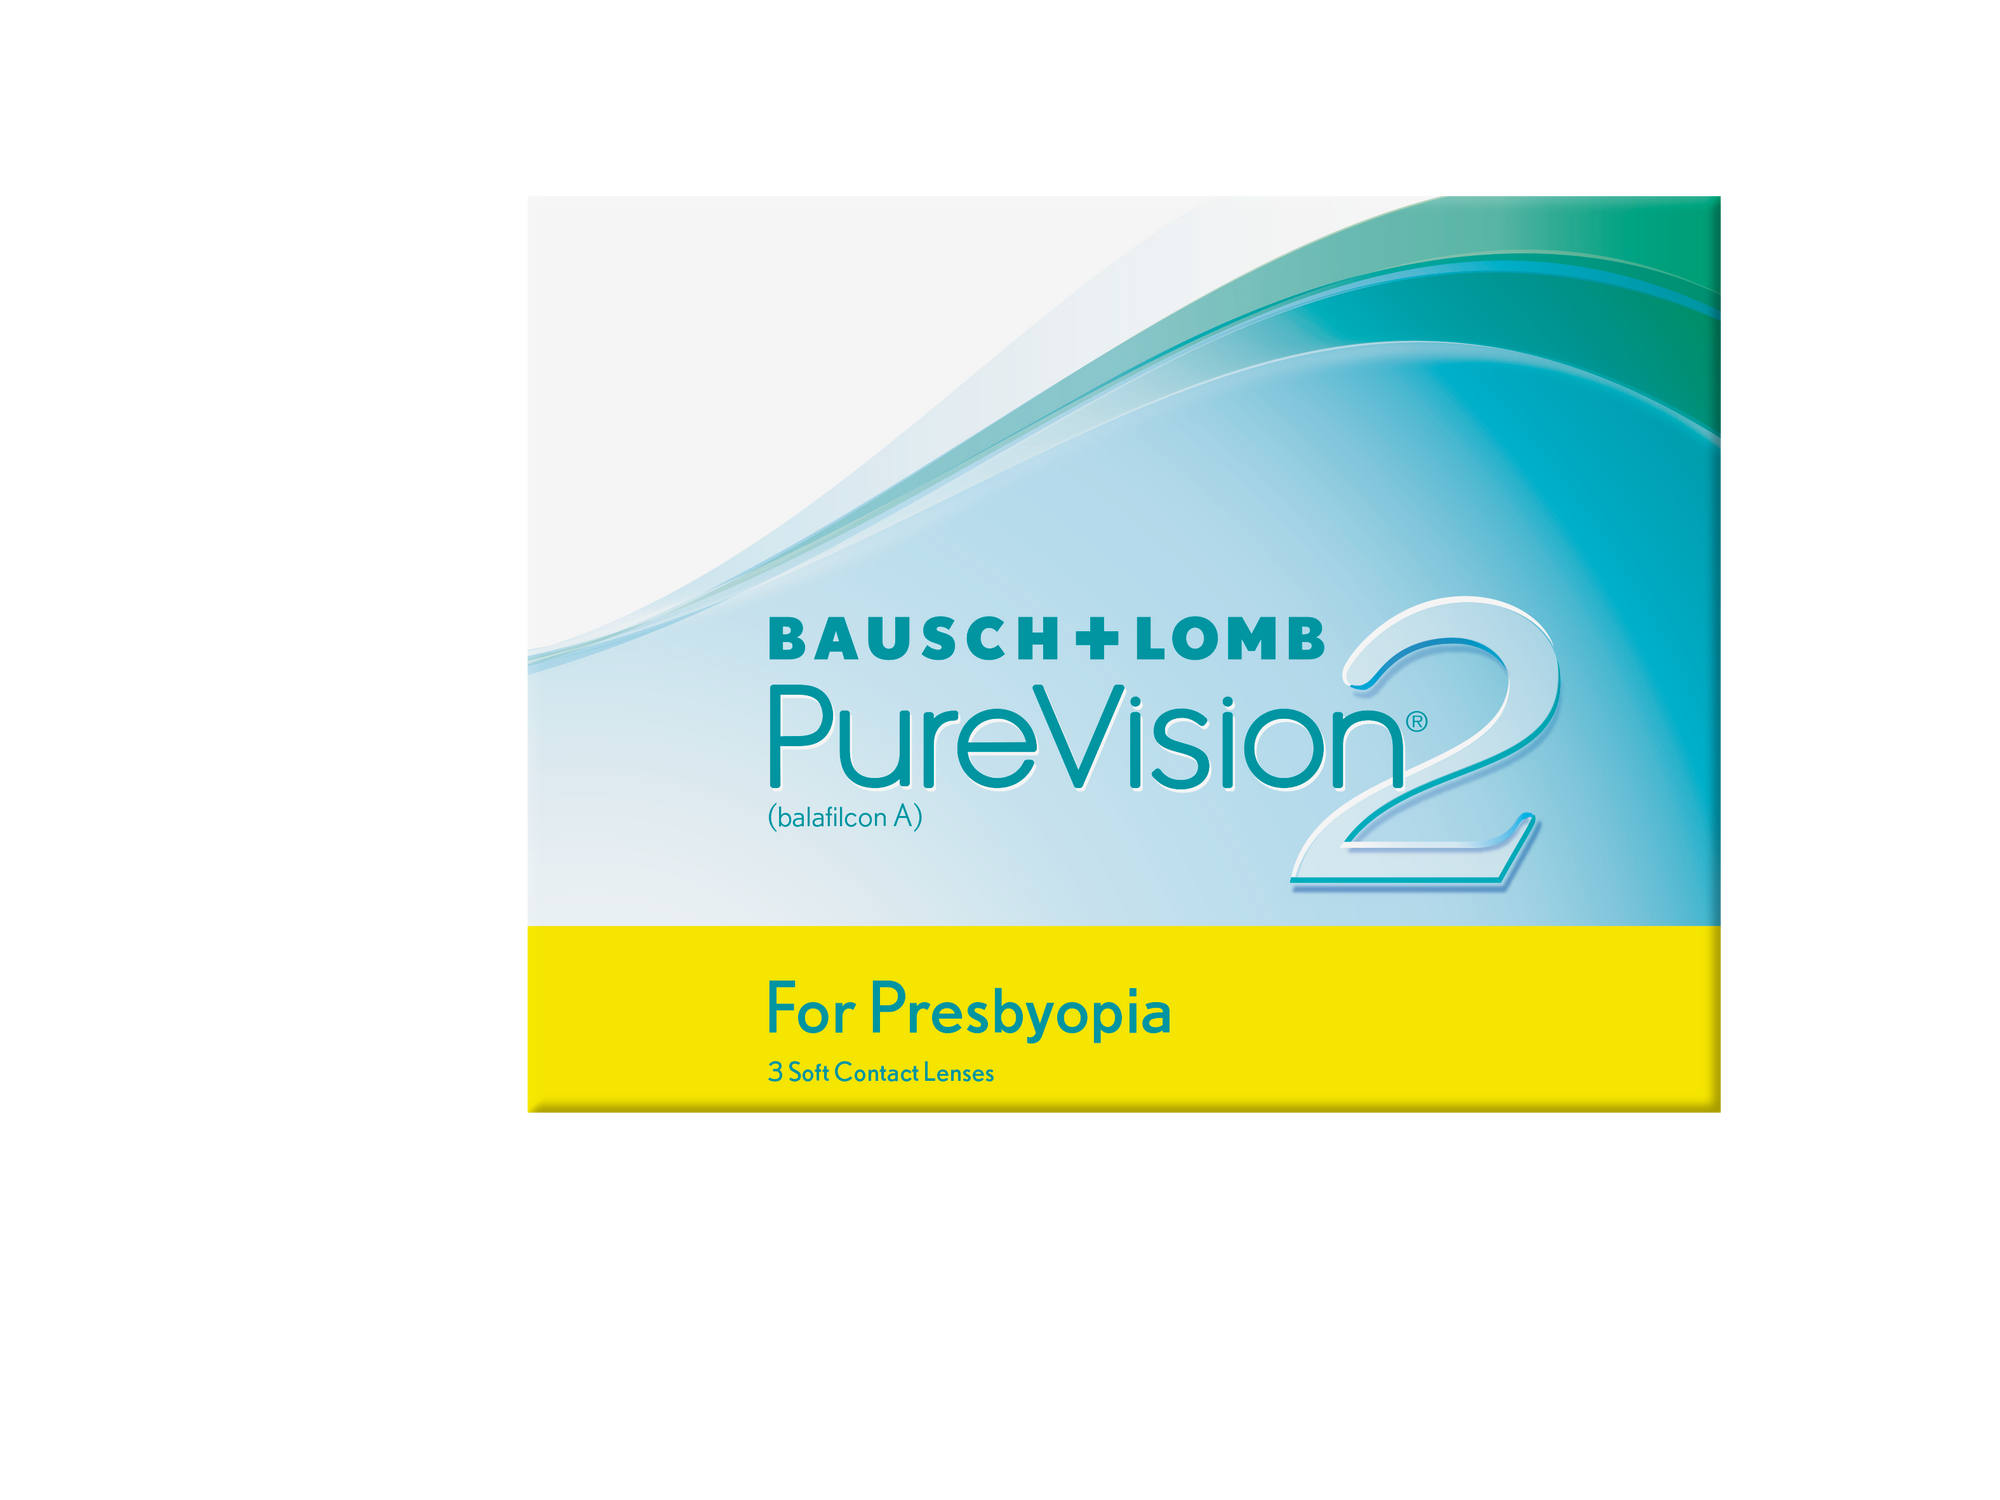 Purevision 2 For Presbyopia